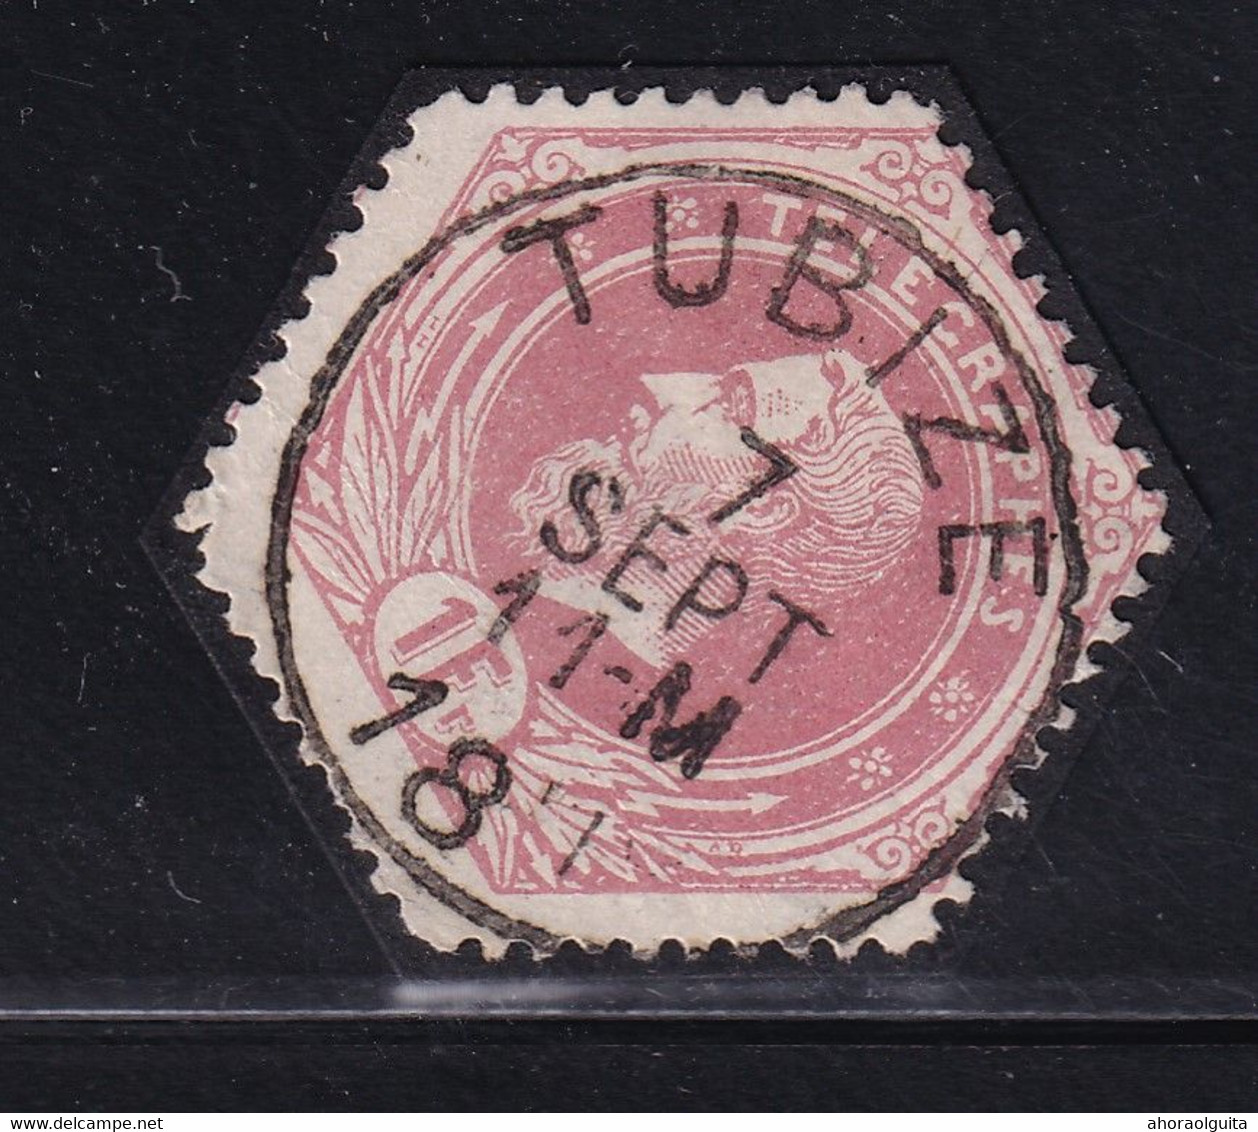 DDDD 433  --  Timbre Télégraphe Cachet Postal Simple Cercle TUBIZE 1891 - Frappe LUXE - Telegraphenmarken [TG]